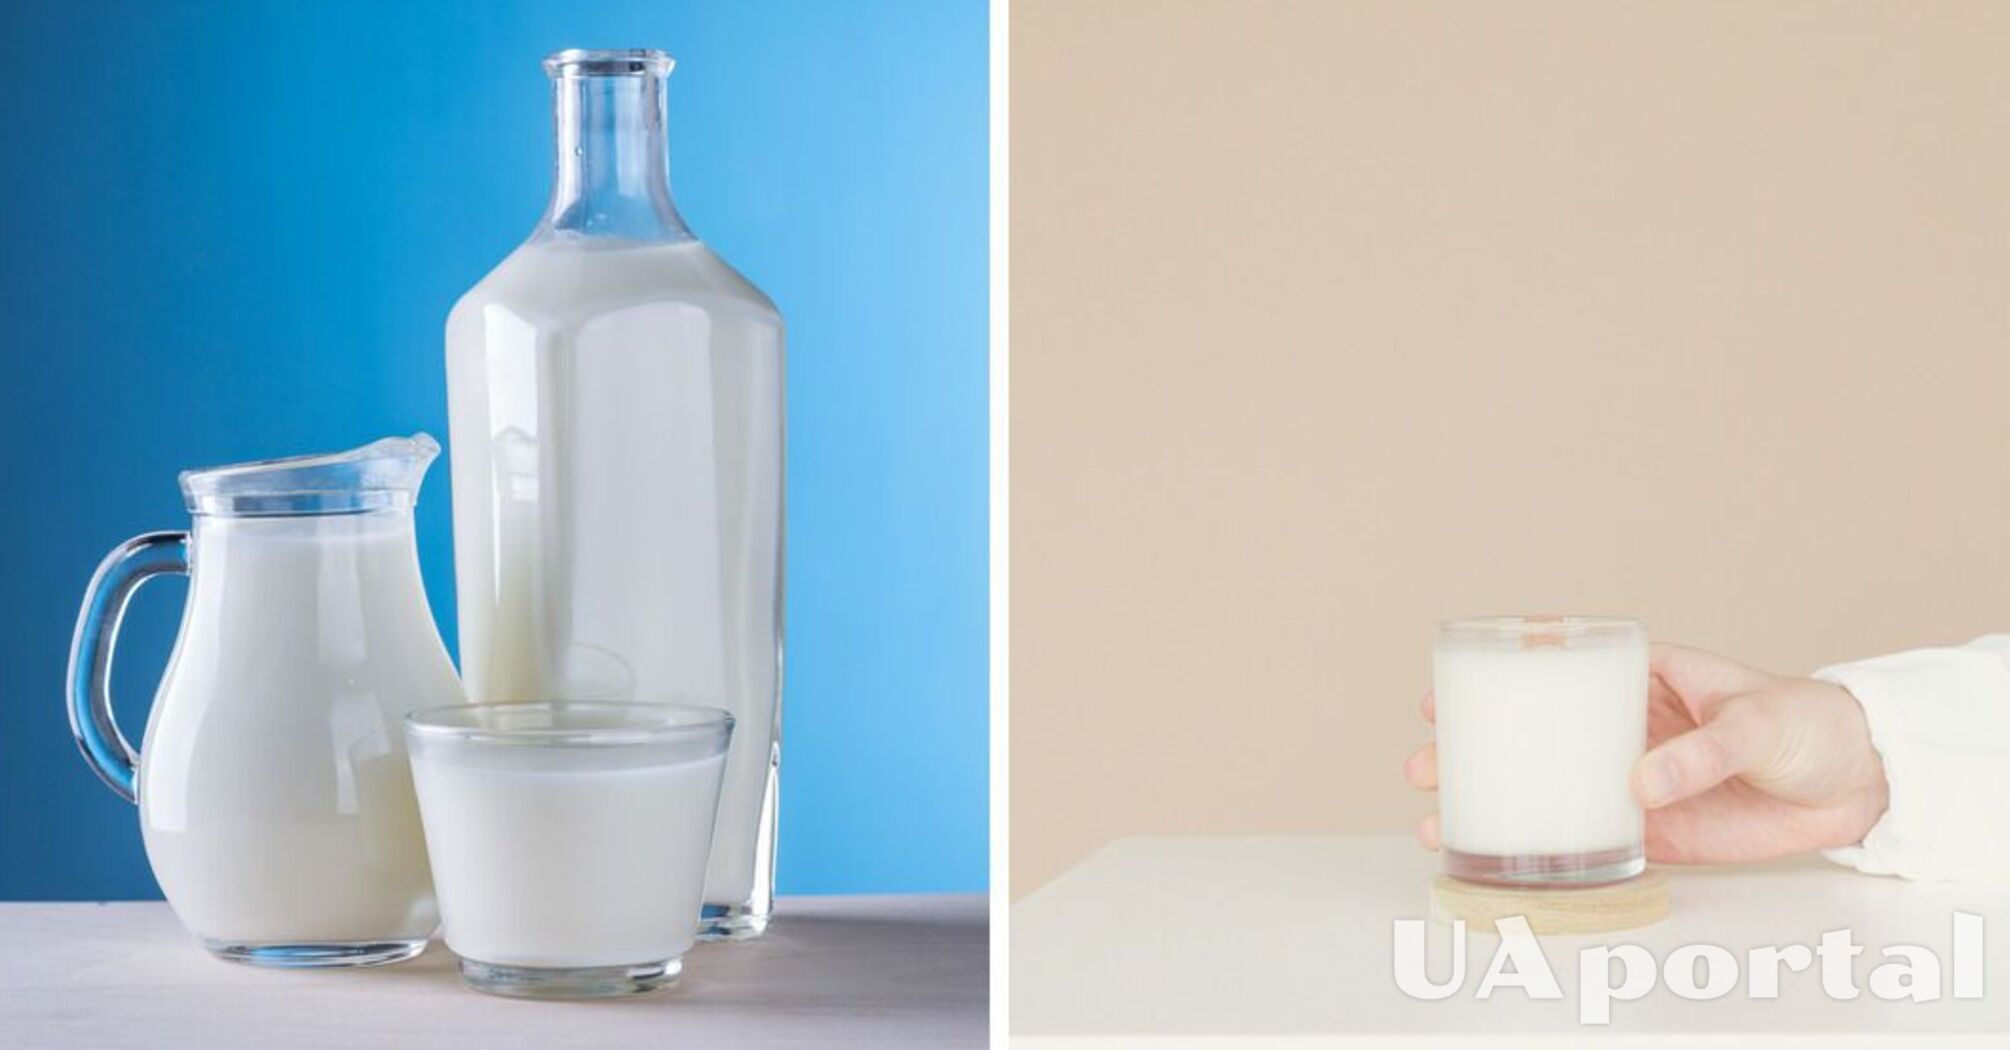 Why milk curdles: a scientific explanation